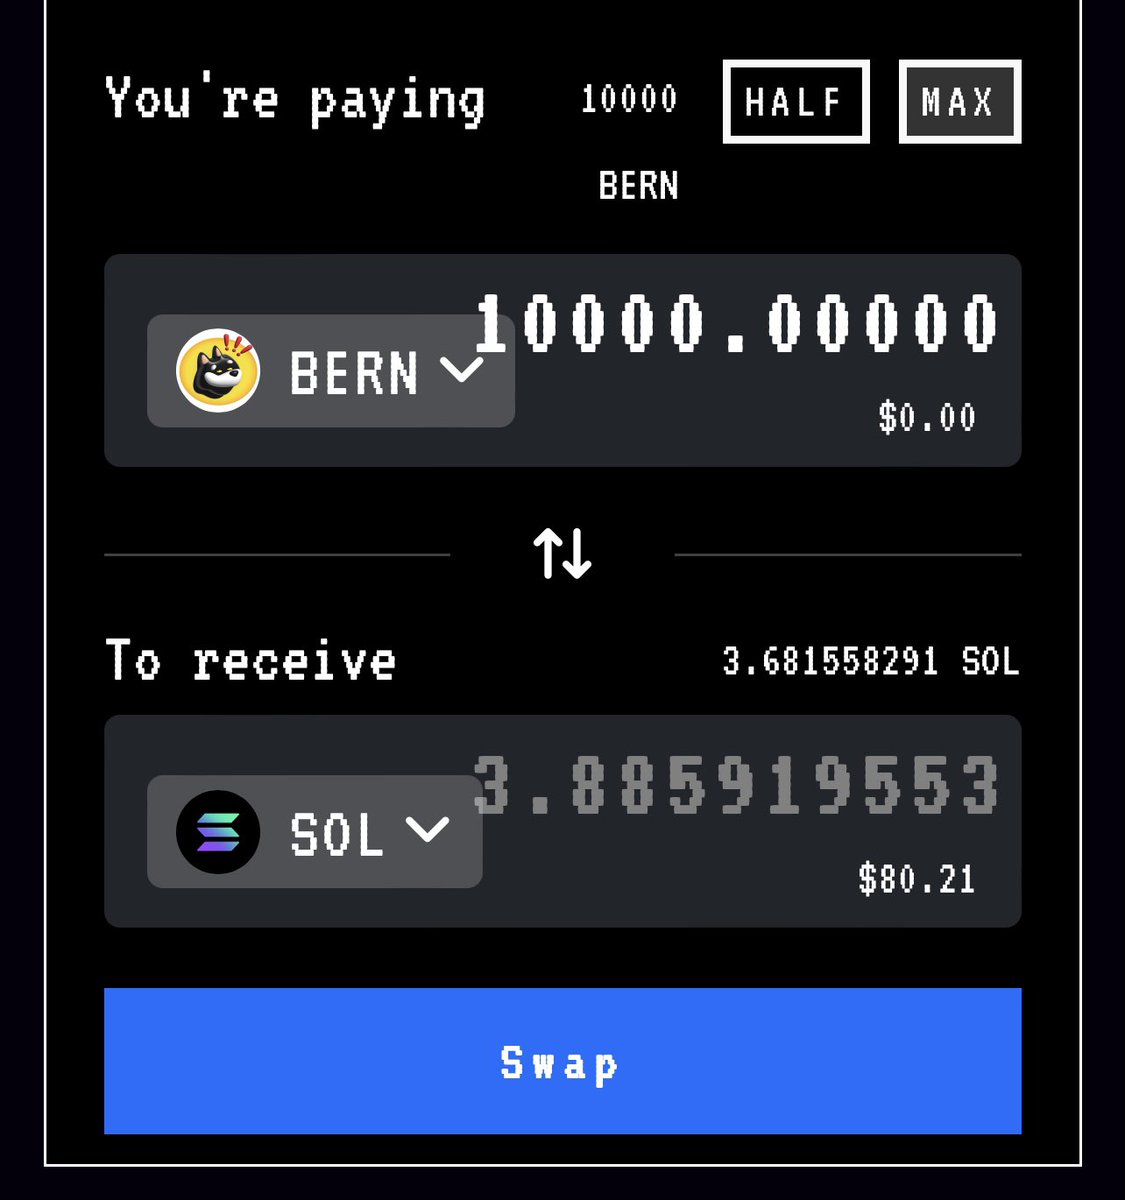 Solana cüzdanında $BONK token hold edenler, cüzdanlarını kontrol etsin. $BERN token airdrop gelmiş ola biler. Men satdım, 80$ (3.80 SOL) - satarken slippage -ni 3% edin.

If you hold $BONK maybe you get $BERN token

✔️SC $BERN : 
CKfatsPMUf8SkiURsDXs7eK6GWb4Jsd6UDbs7twMCWxo…